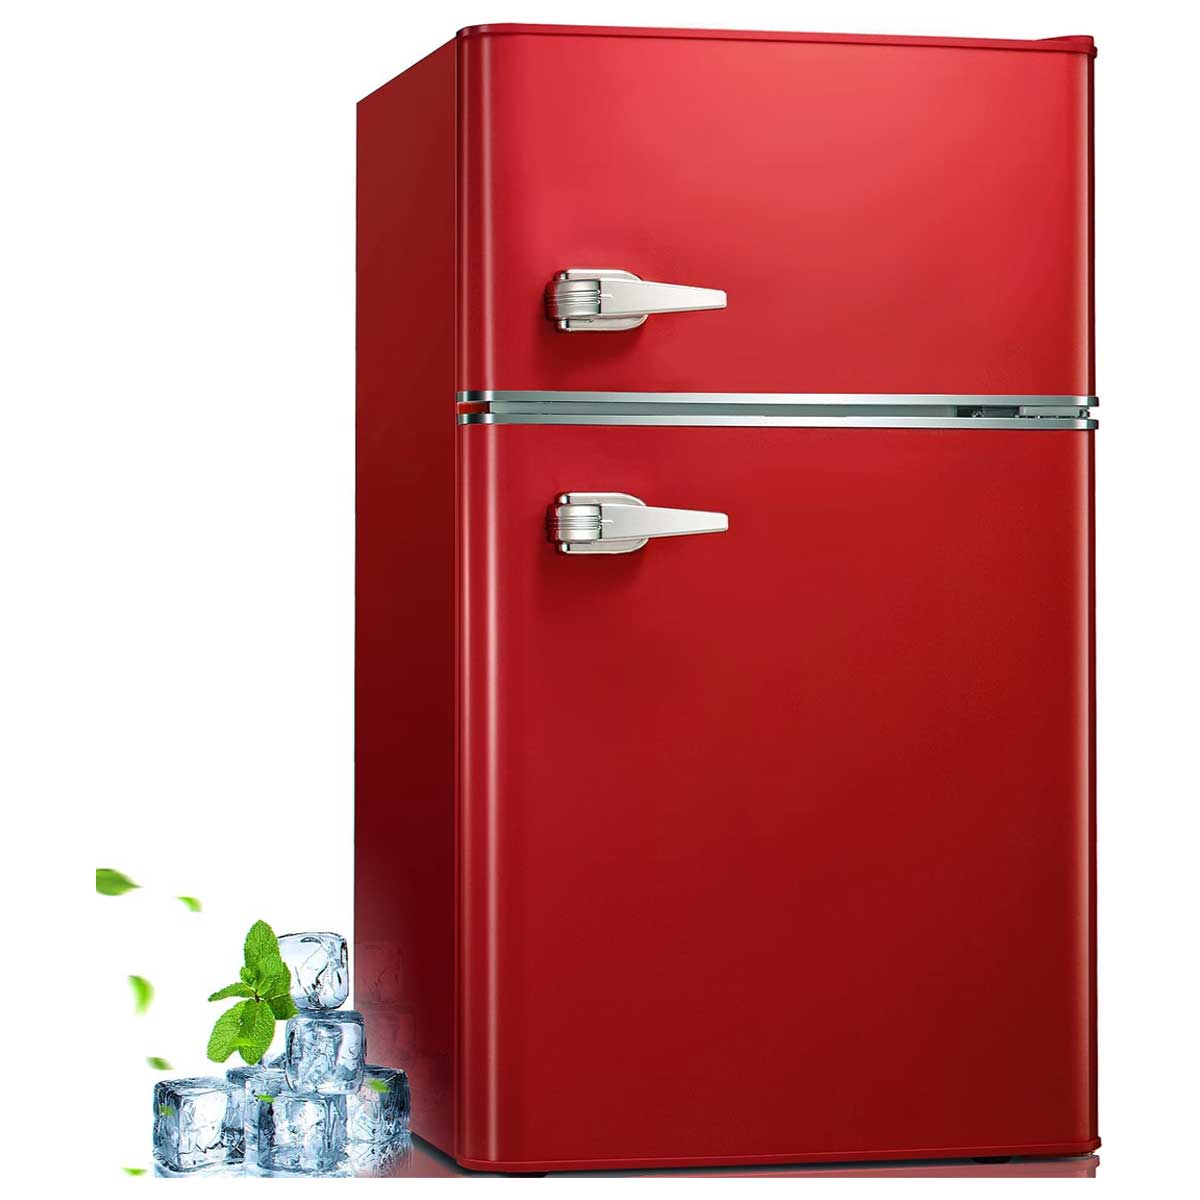 3.2 Cu.ft Double Doors Freestanding Mini Refrigerator with Freezer